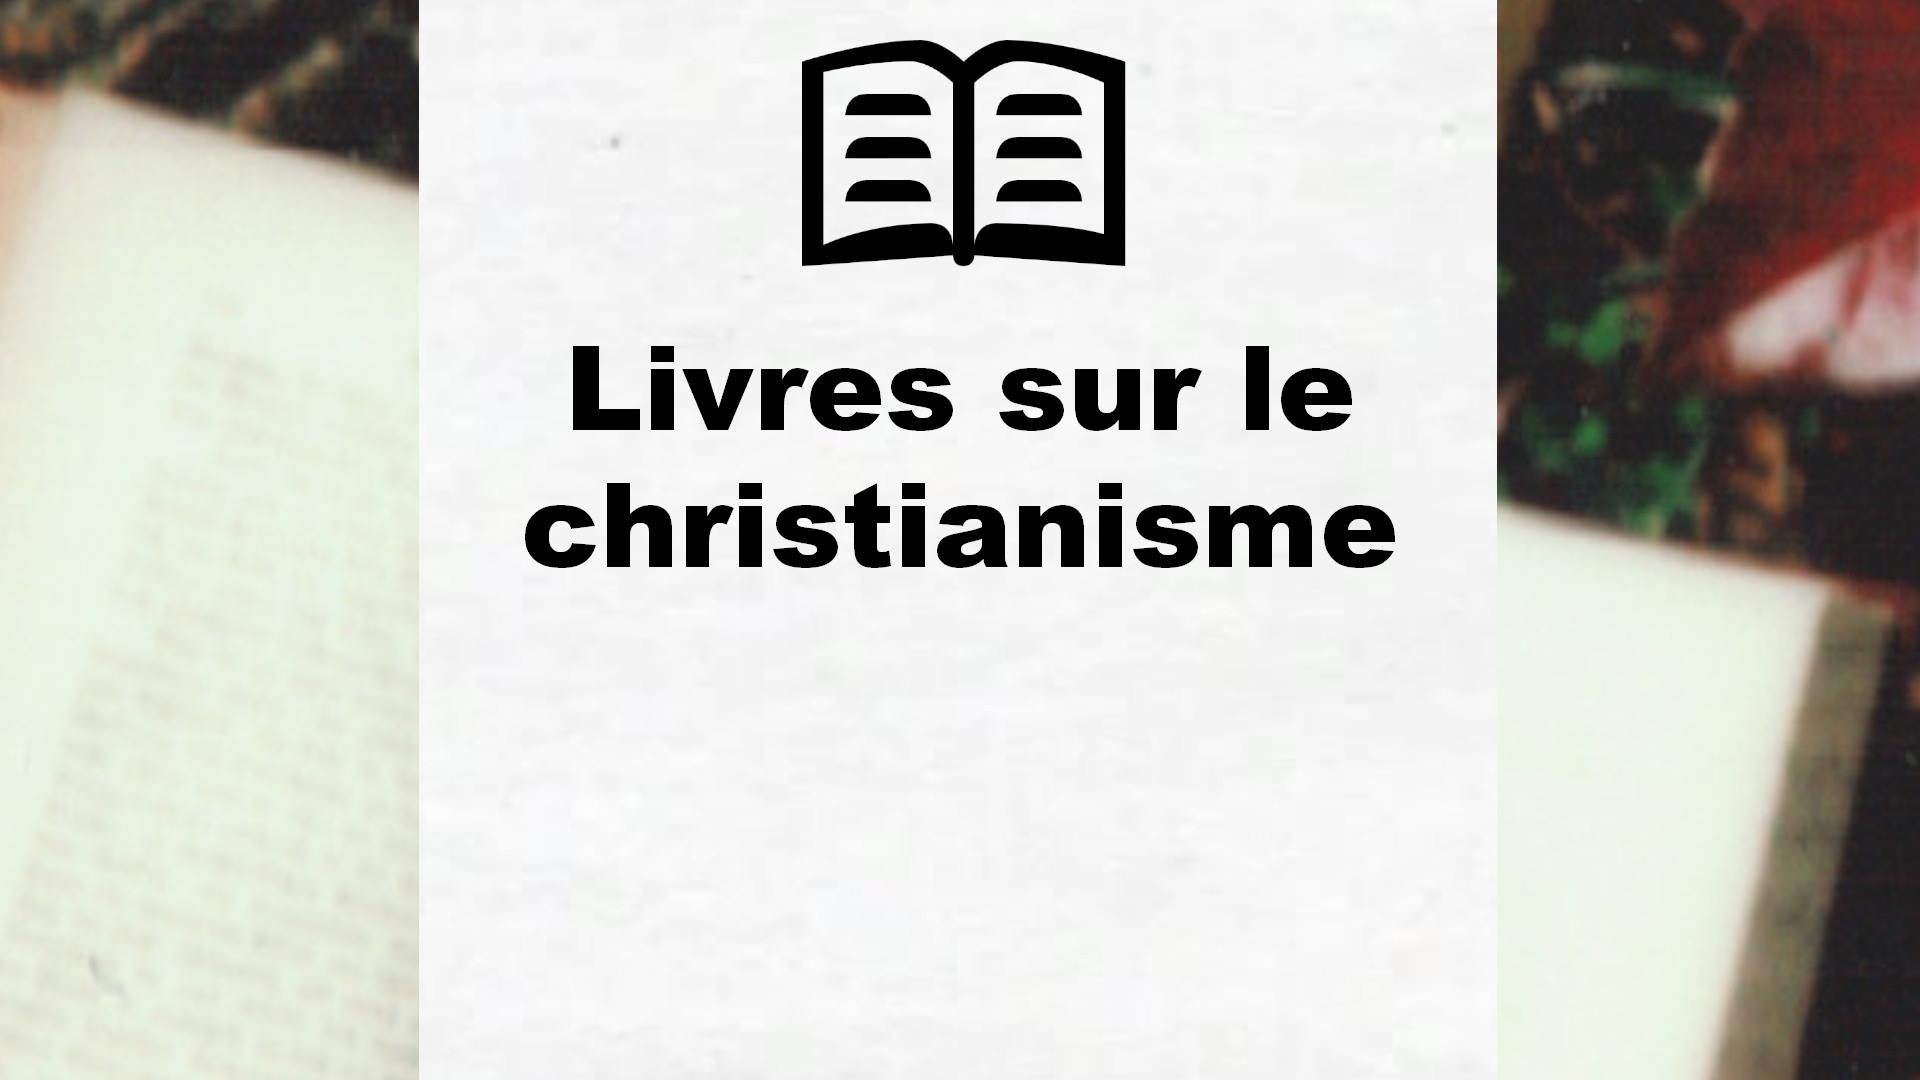 Livres sur le christianisme